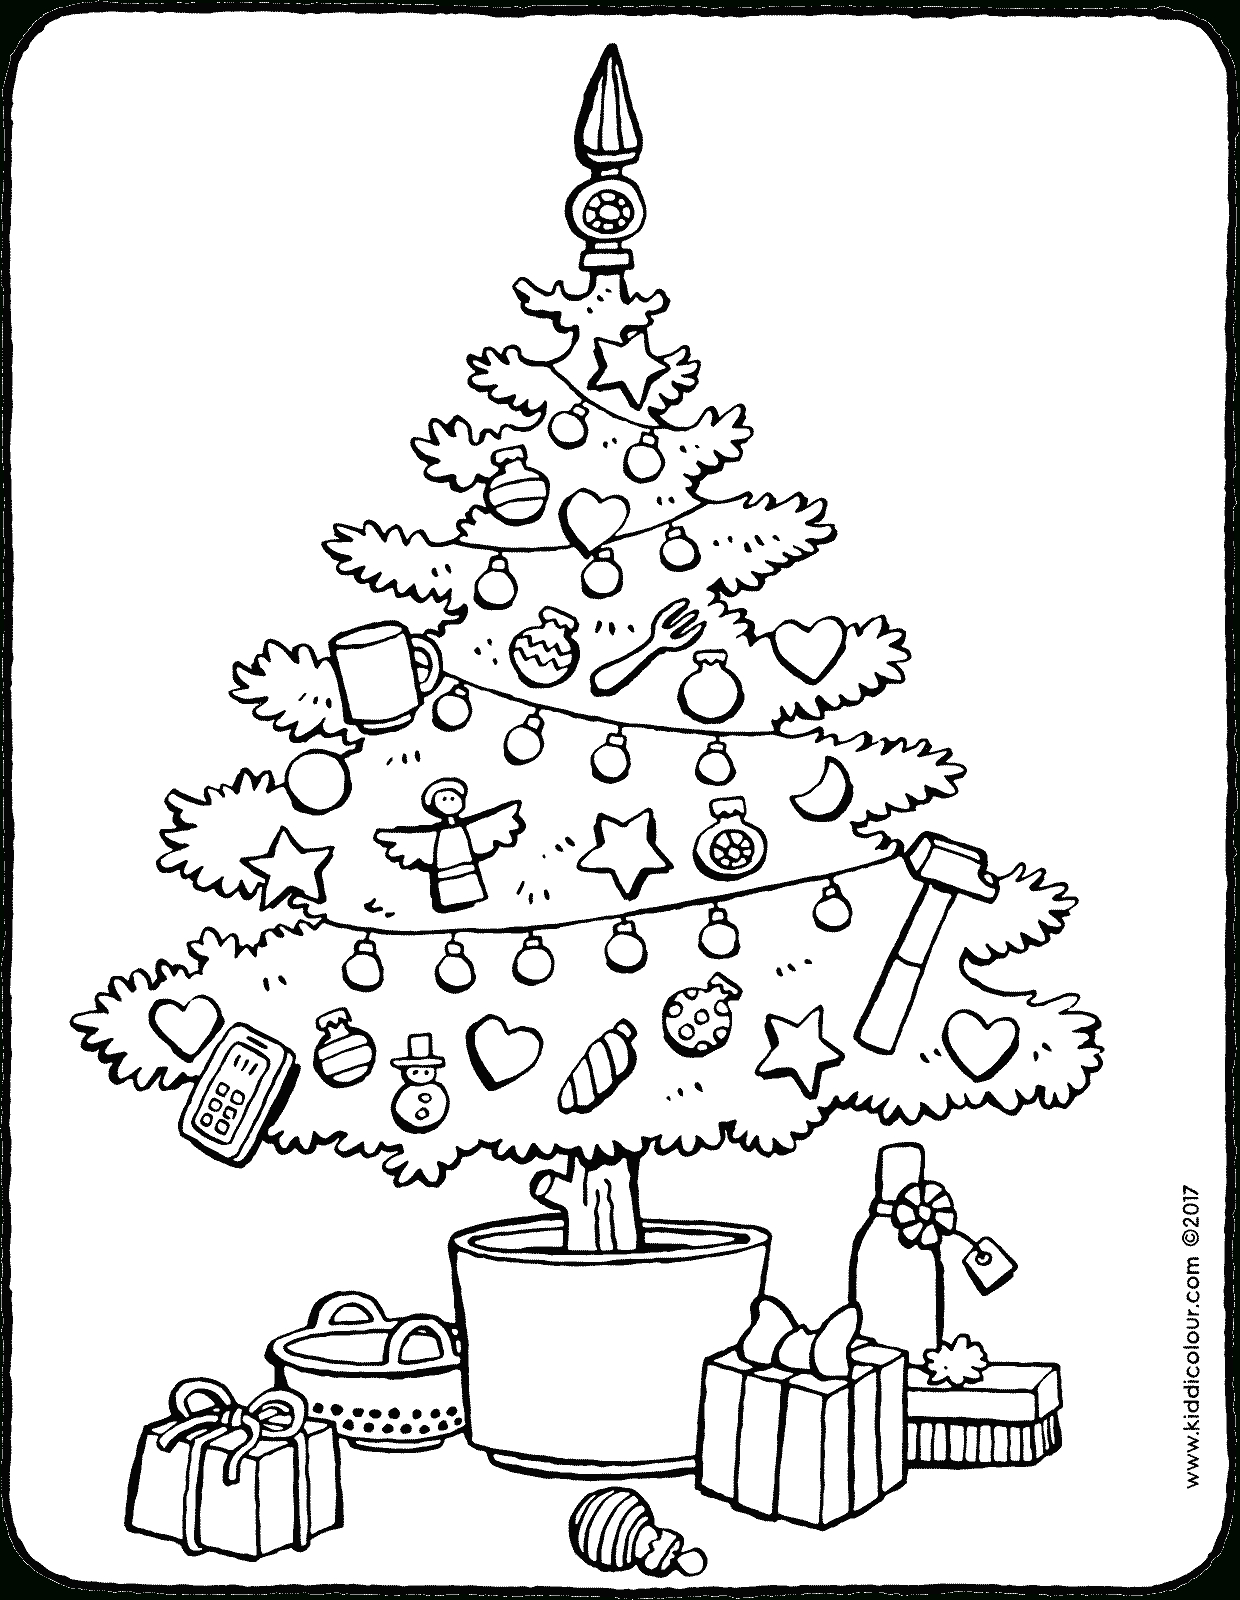 Was Gehört Nicht In Einen Weihnachtsbaum? - Kiddimalseite verwandt mit Weihnachtsbaum Malvorlage